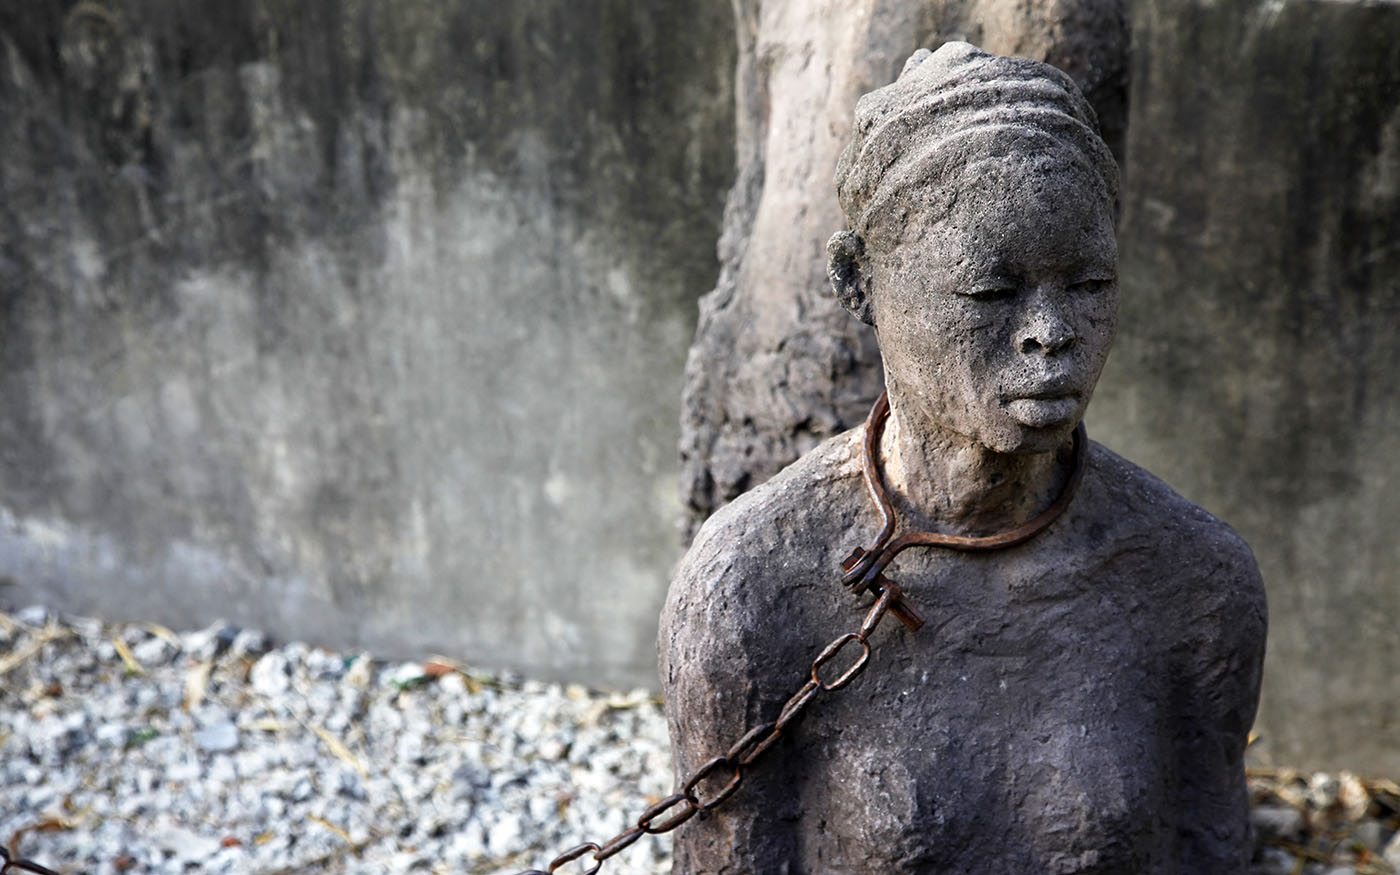     Les 20 ans de la loi Taubira pour la reconnaissance de l'esclavage comme crime contre l'humanité

